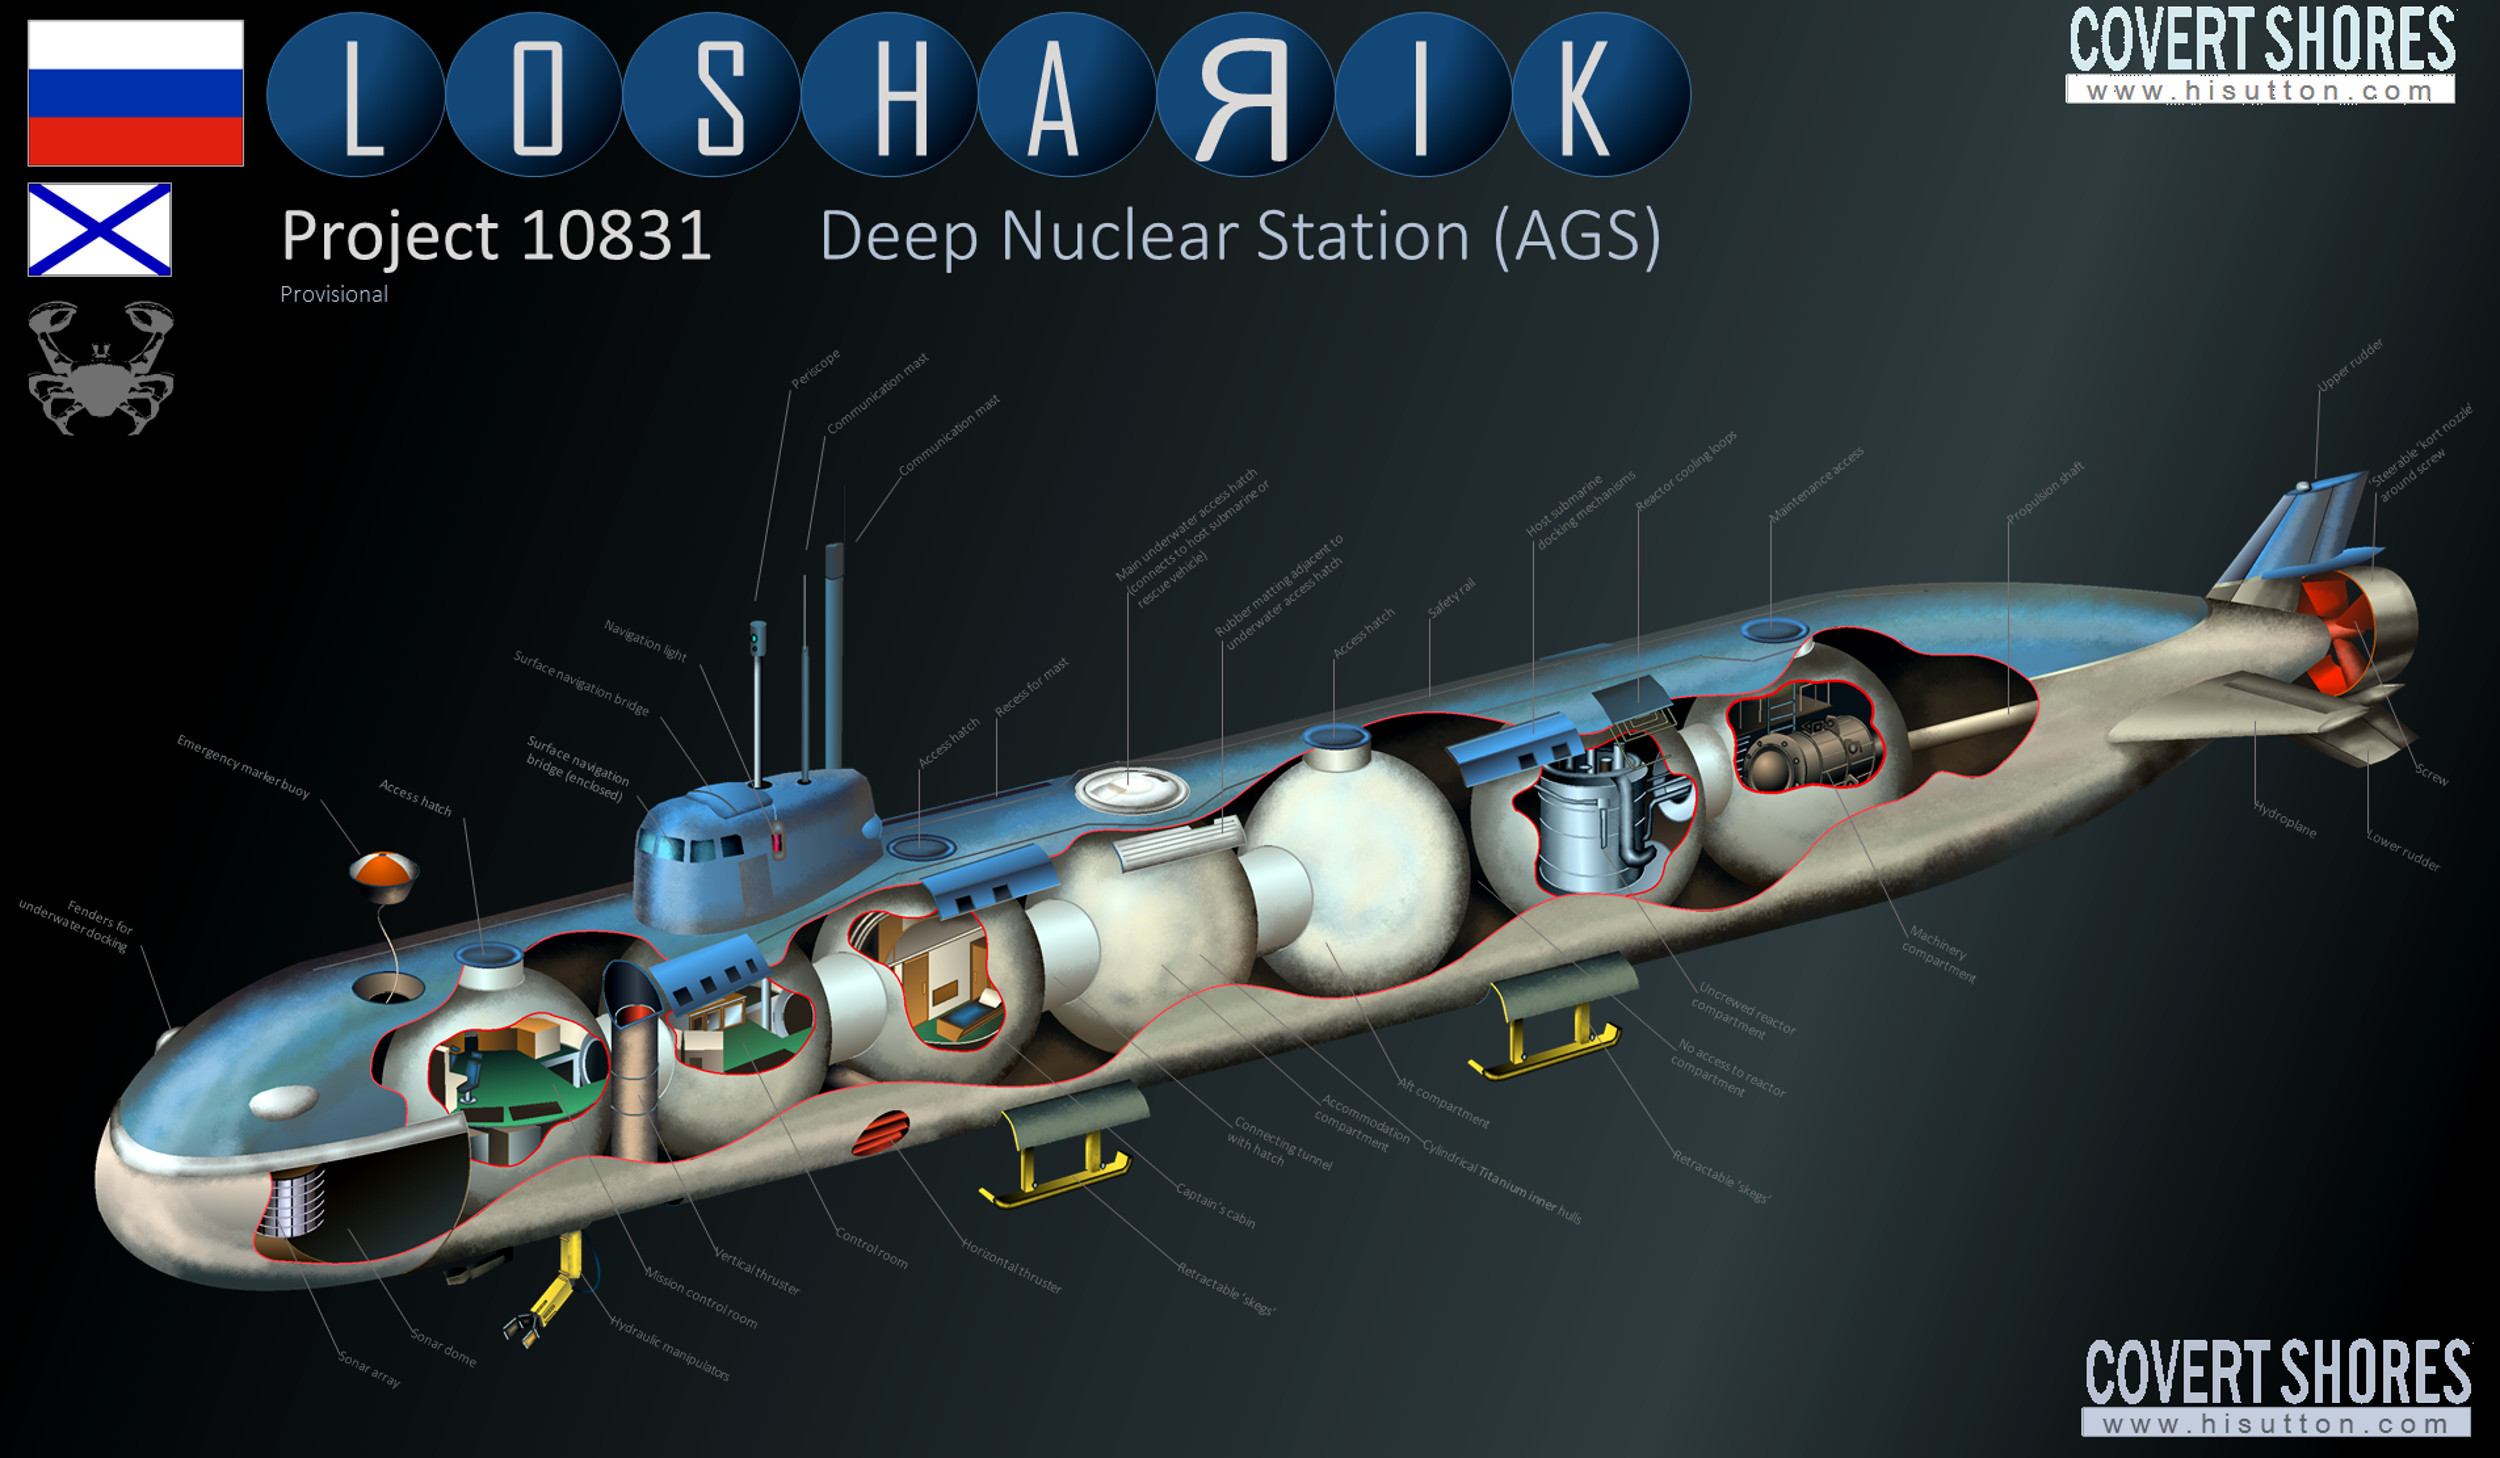 Předpokládaná struktura ponorky Lošarik. Kredit: Covert Shores.